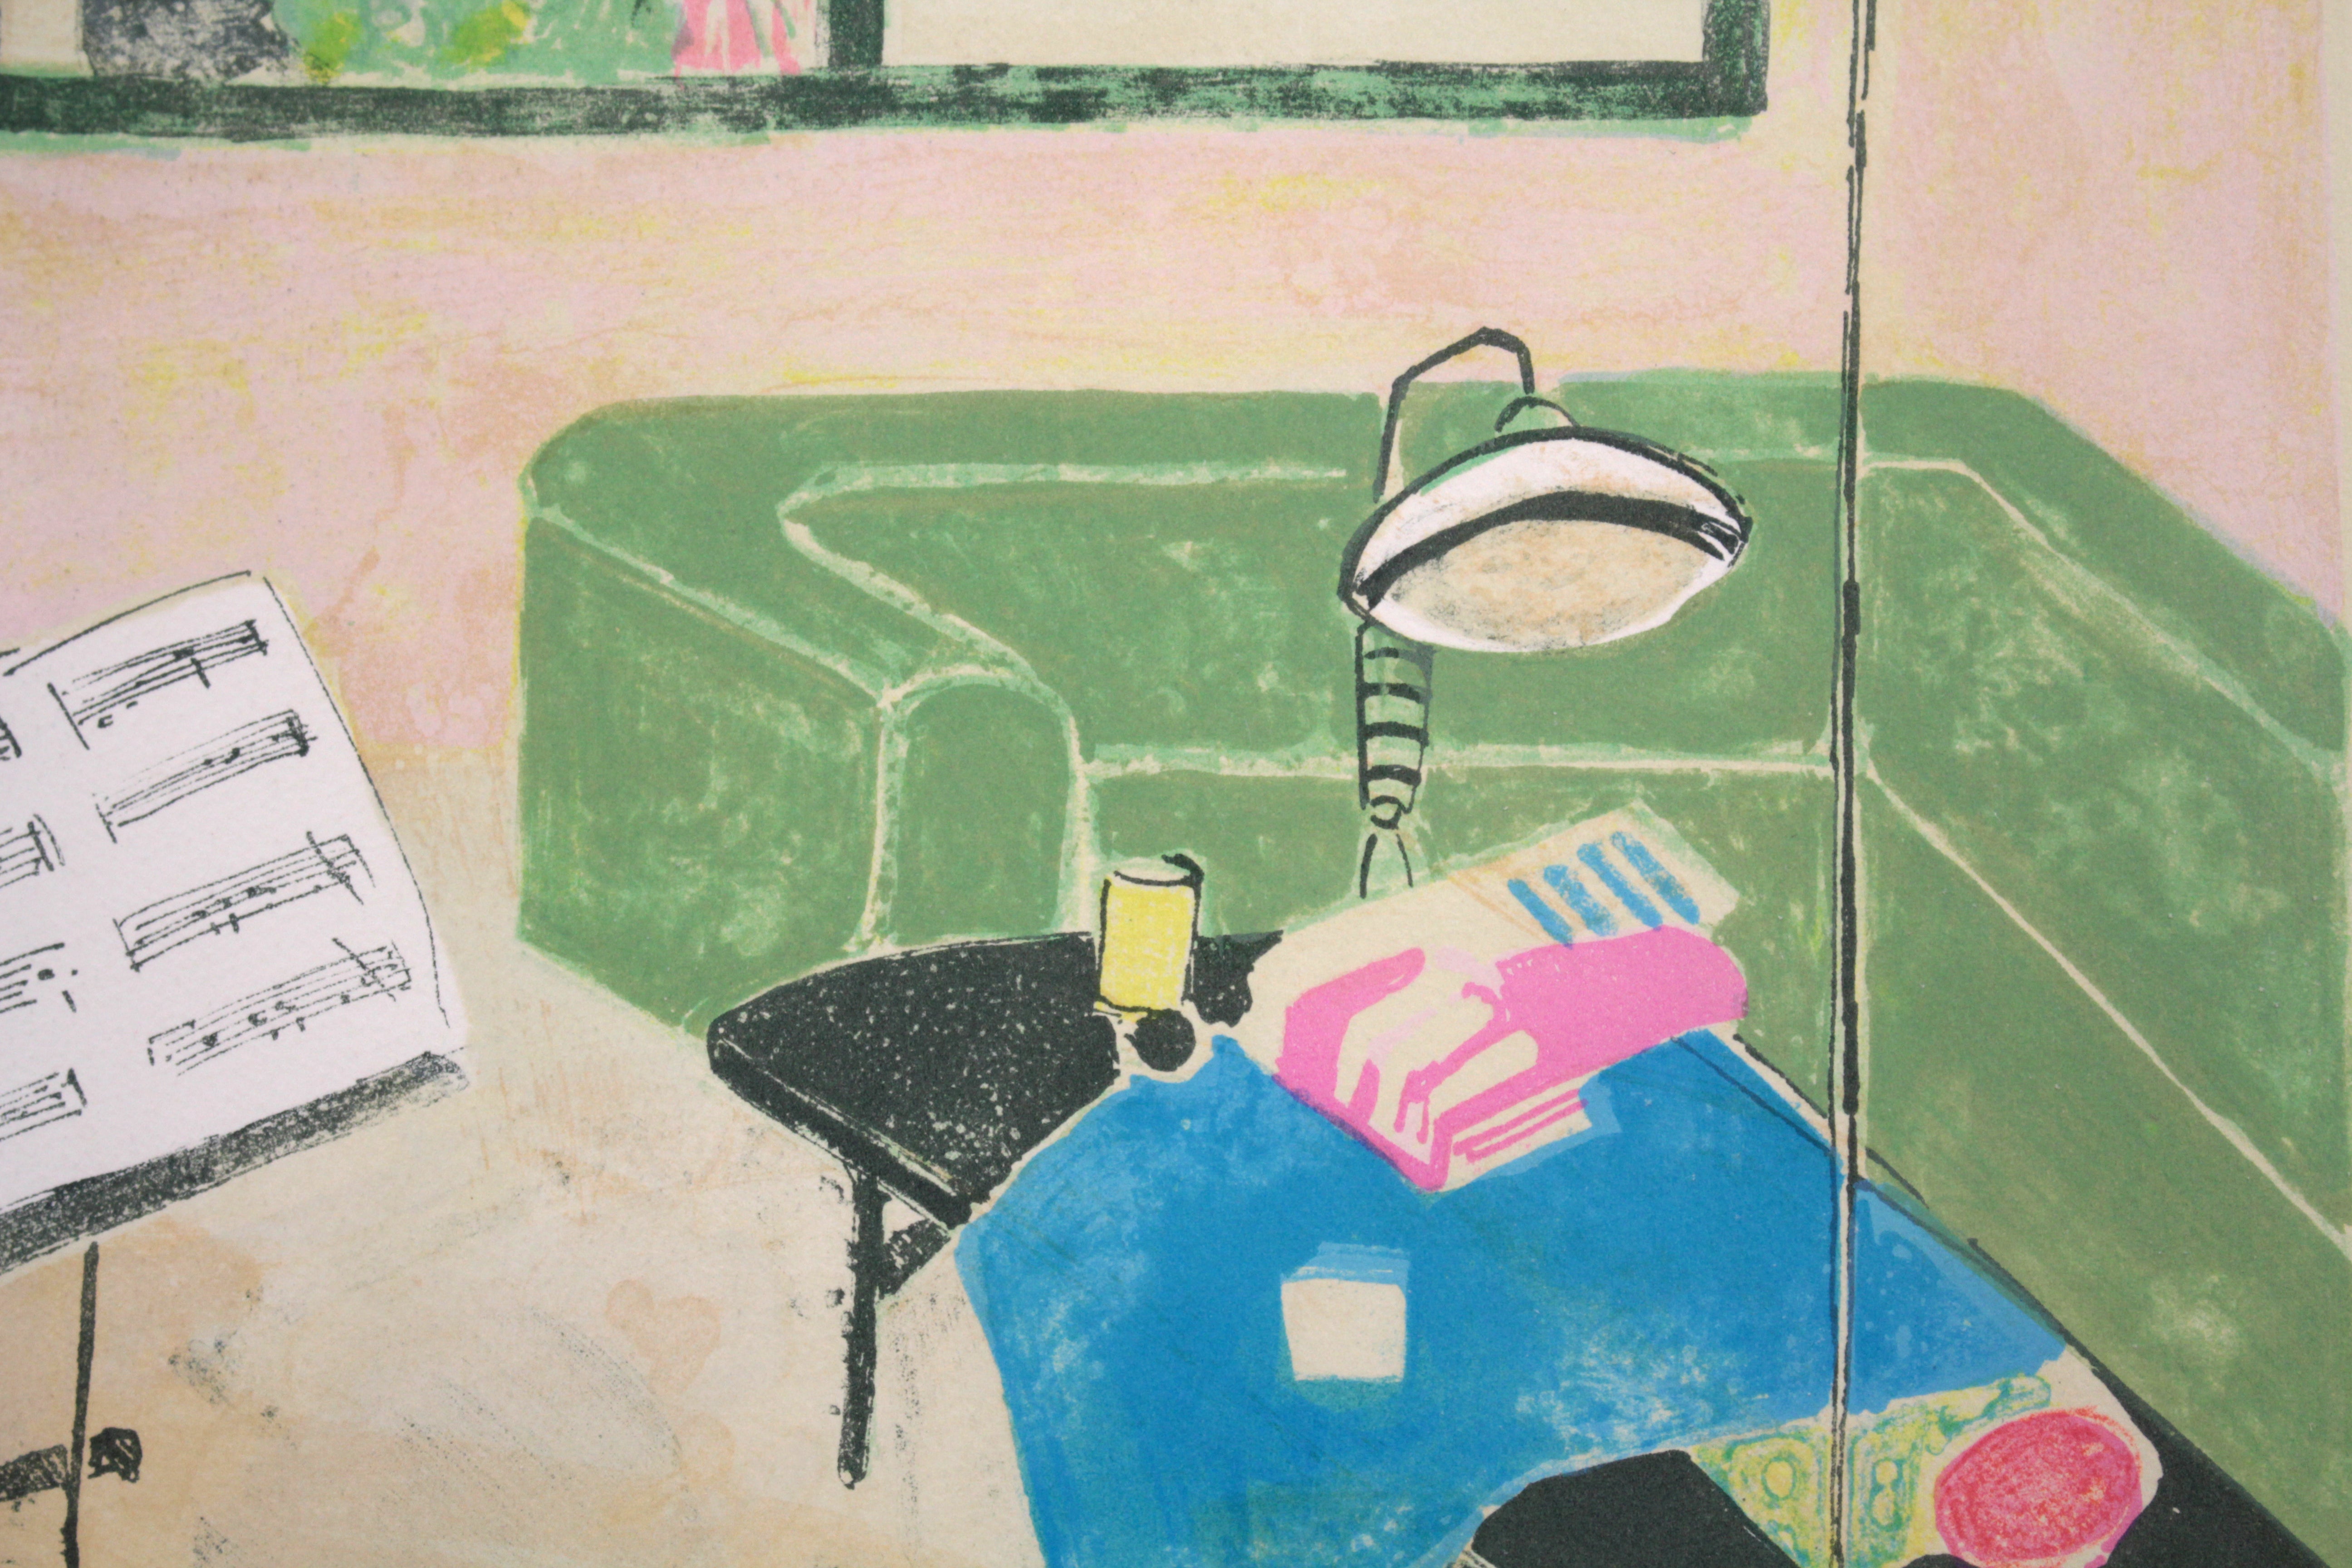 ジル・ゴリチ『スタジオ』リトグラフ【真作保証】 絵画47×60cm作品サイズ